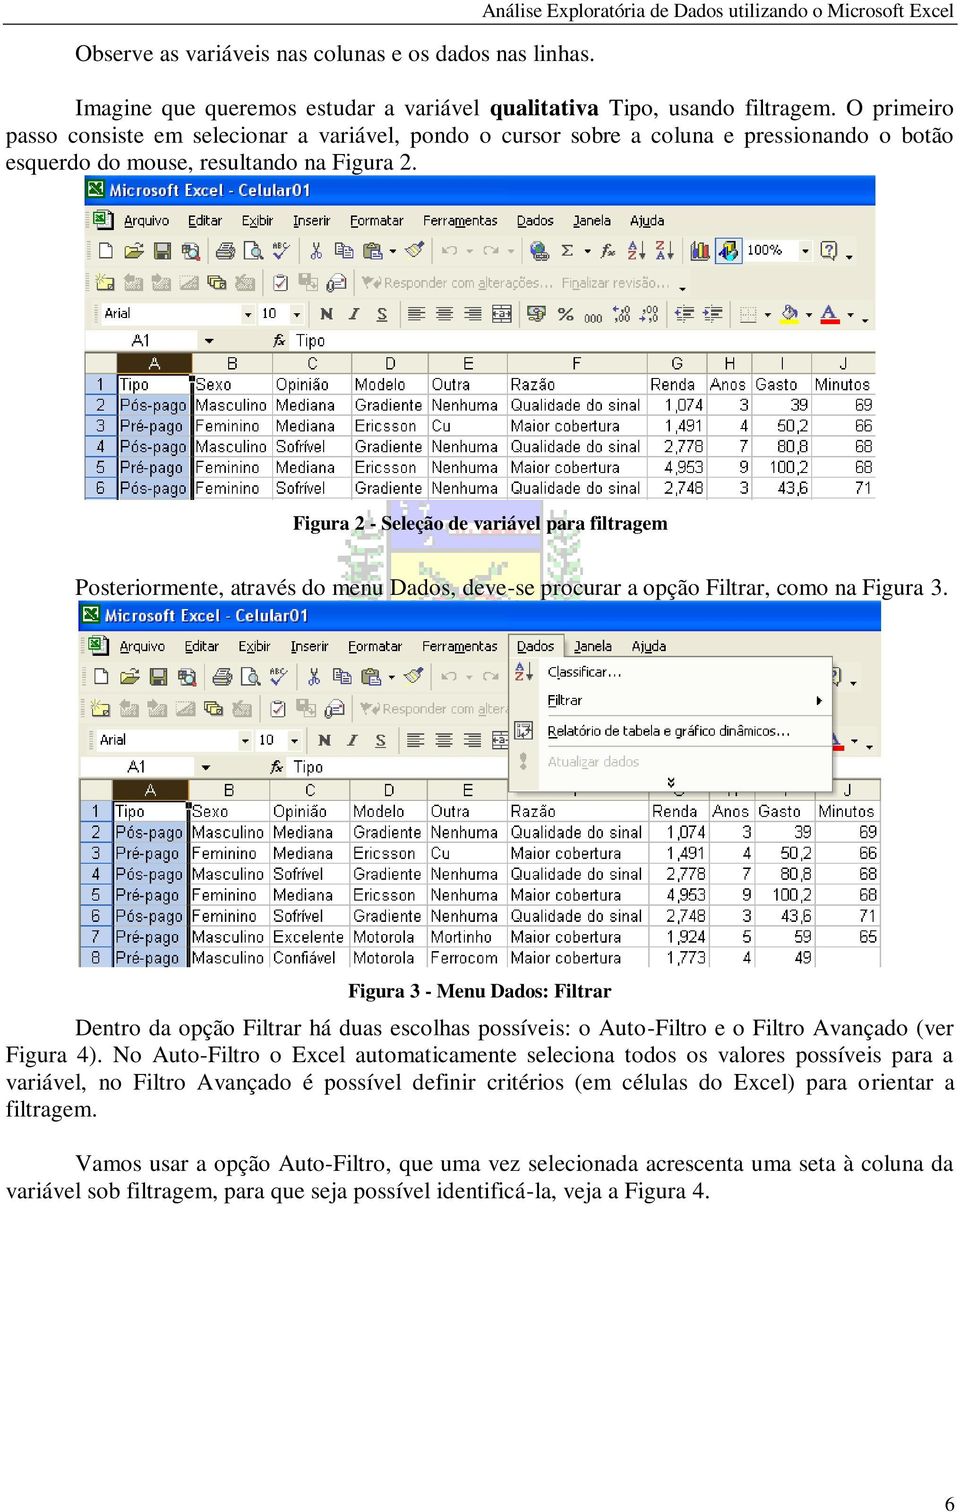 Figura 2 - Seleção de variável para filtragem Posteriormente, através do menu Dados, deve-se procurar a opção Filtrar, como na Figura 3.